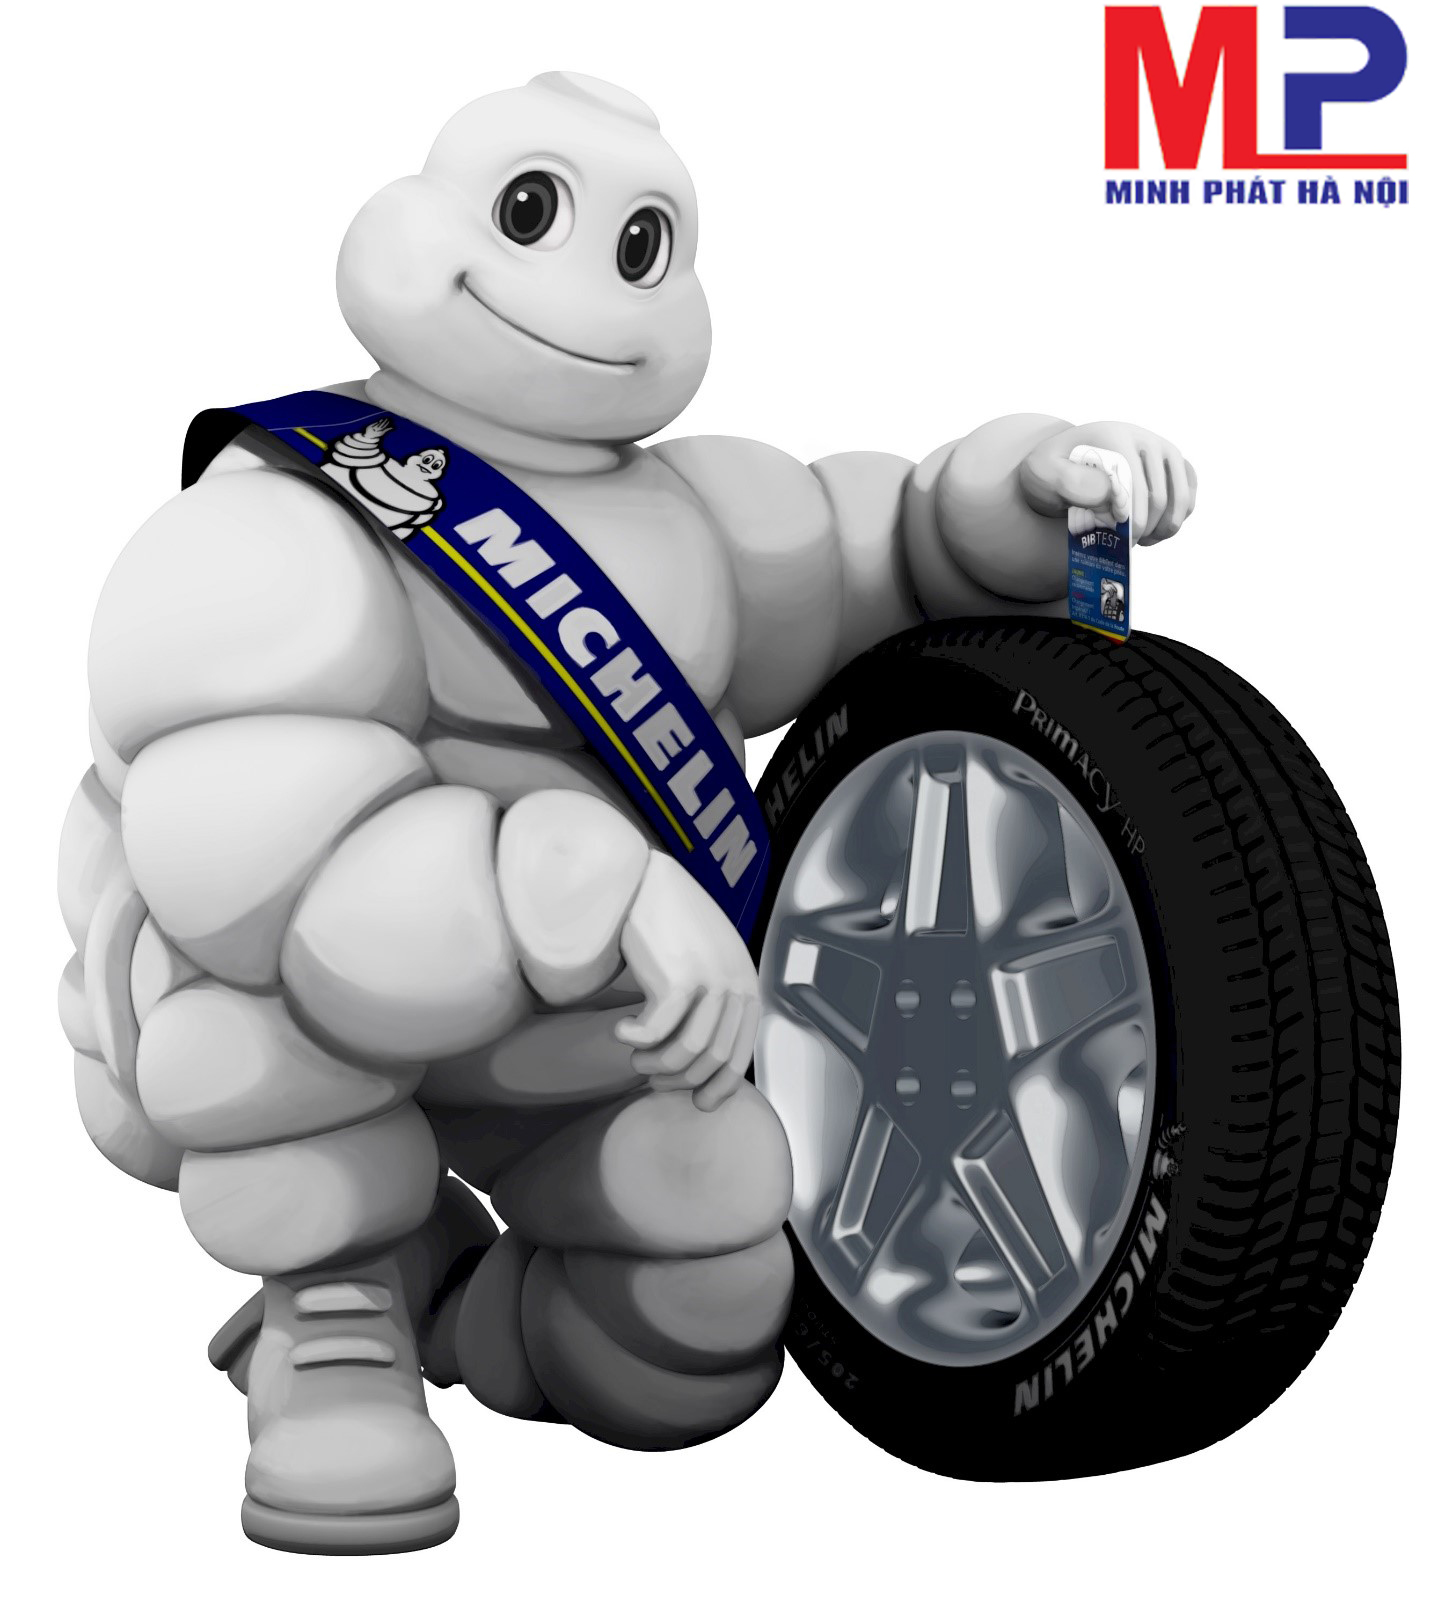 Lốp ô tô Michelin sản xuất với công nghệ hiện đại